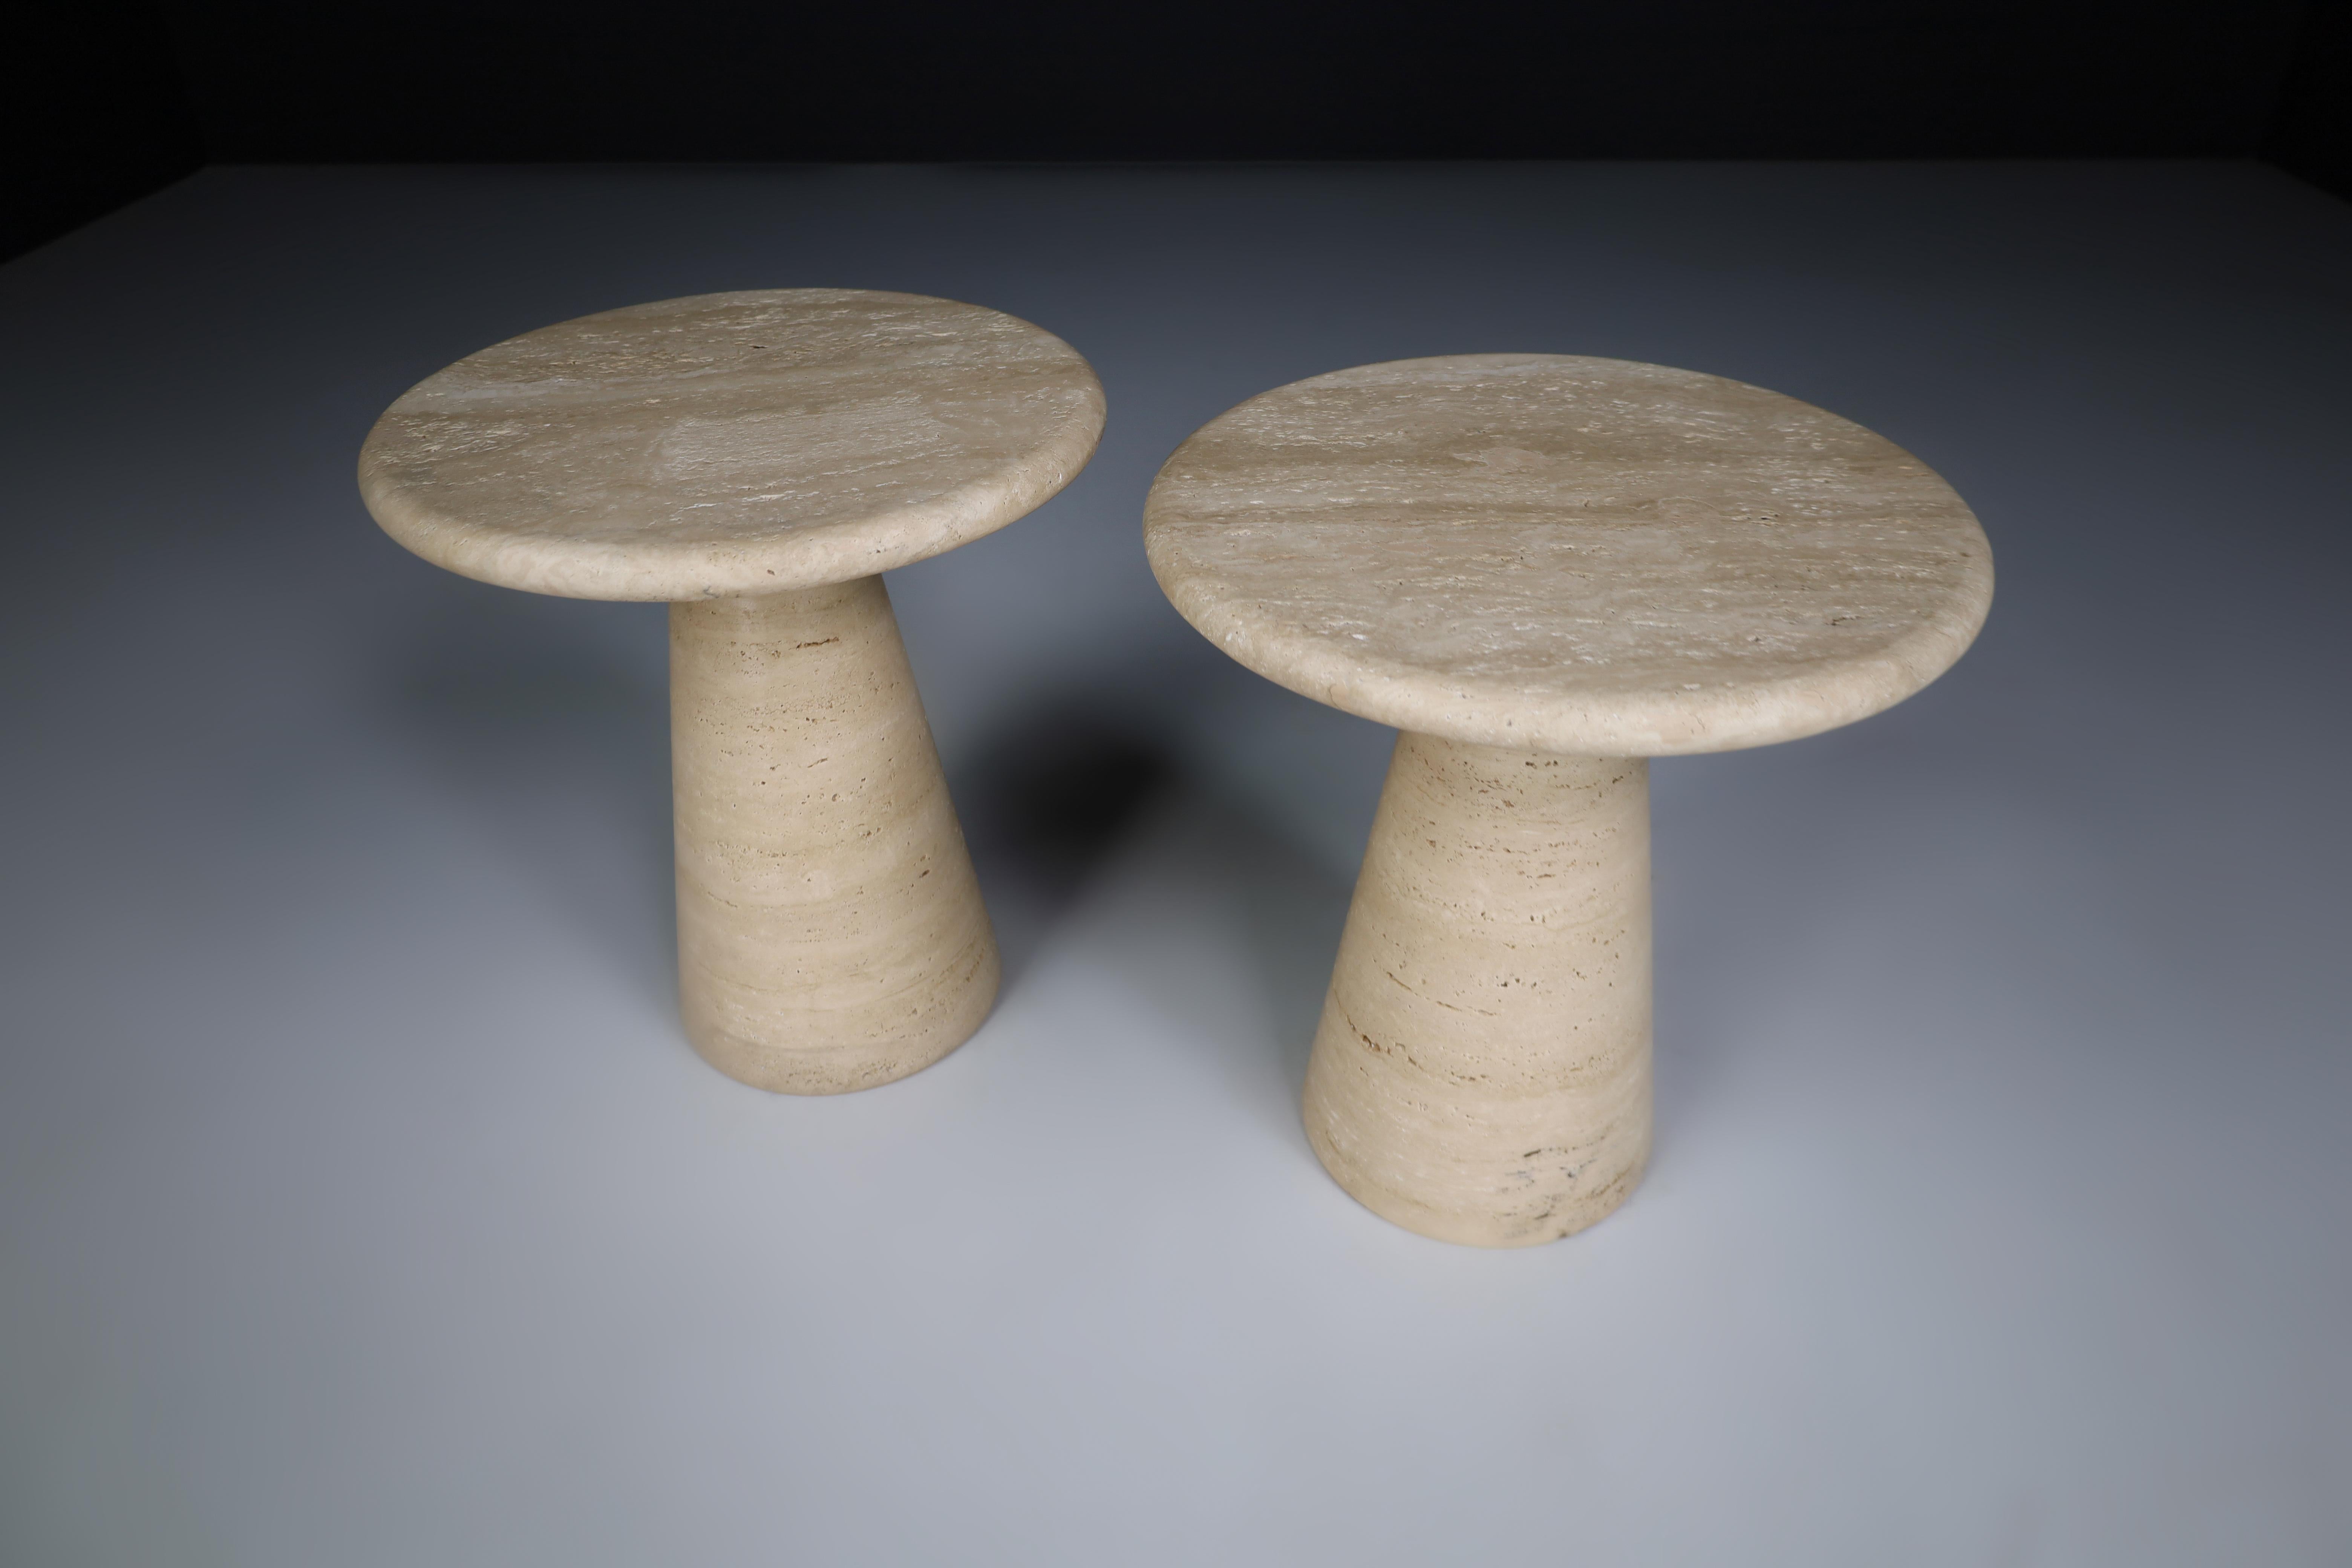 Moderne runde Beistelltische oder Couchtische aus Travertin, Italien 1980er Jahre.

Runde Beistelltische im Stil der Jahrhundertmitte von Angelo Mangiarotti aus Travertin mit konischer Basis. Die Form ist schlicht und lässt die Schönheit und